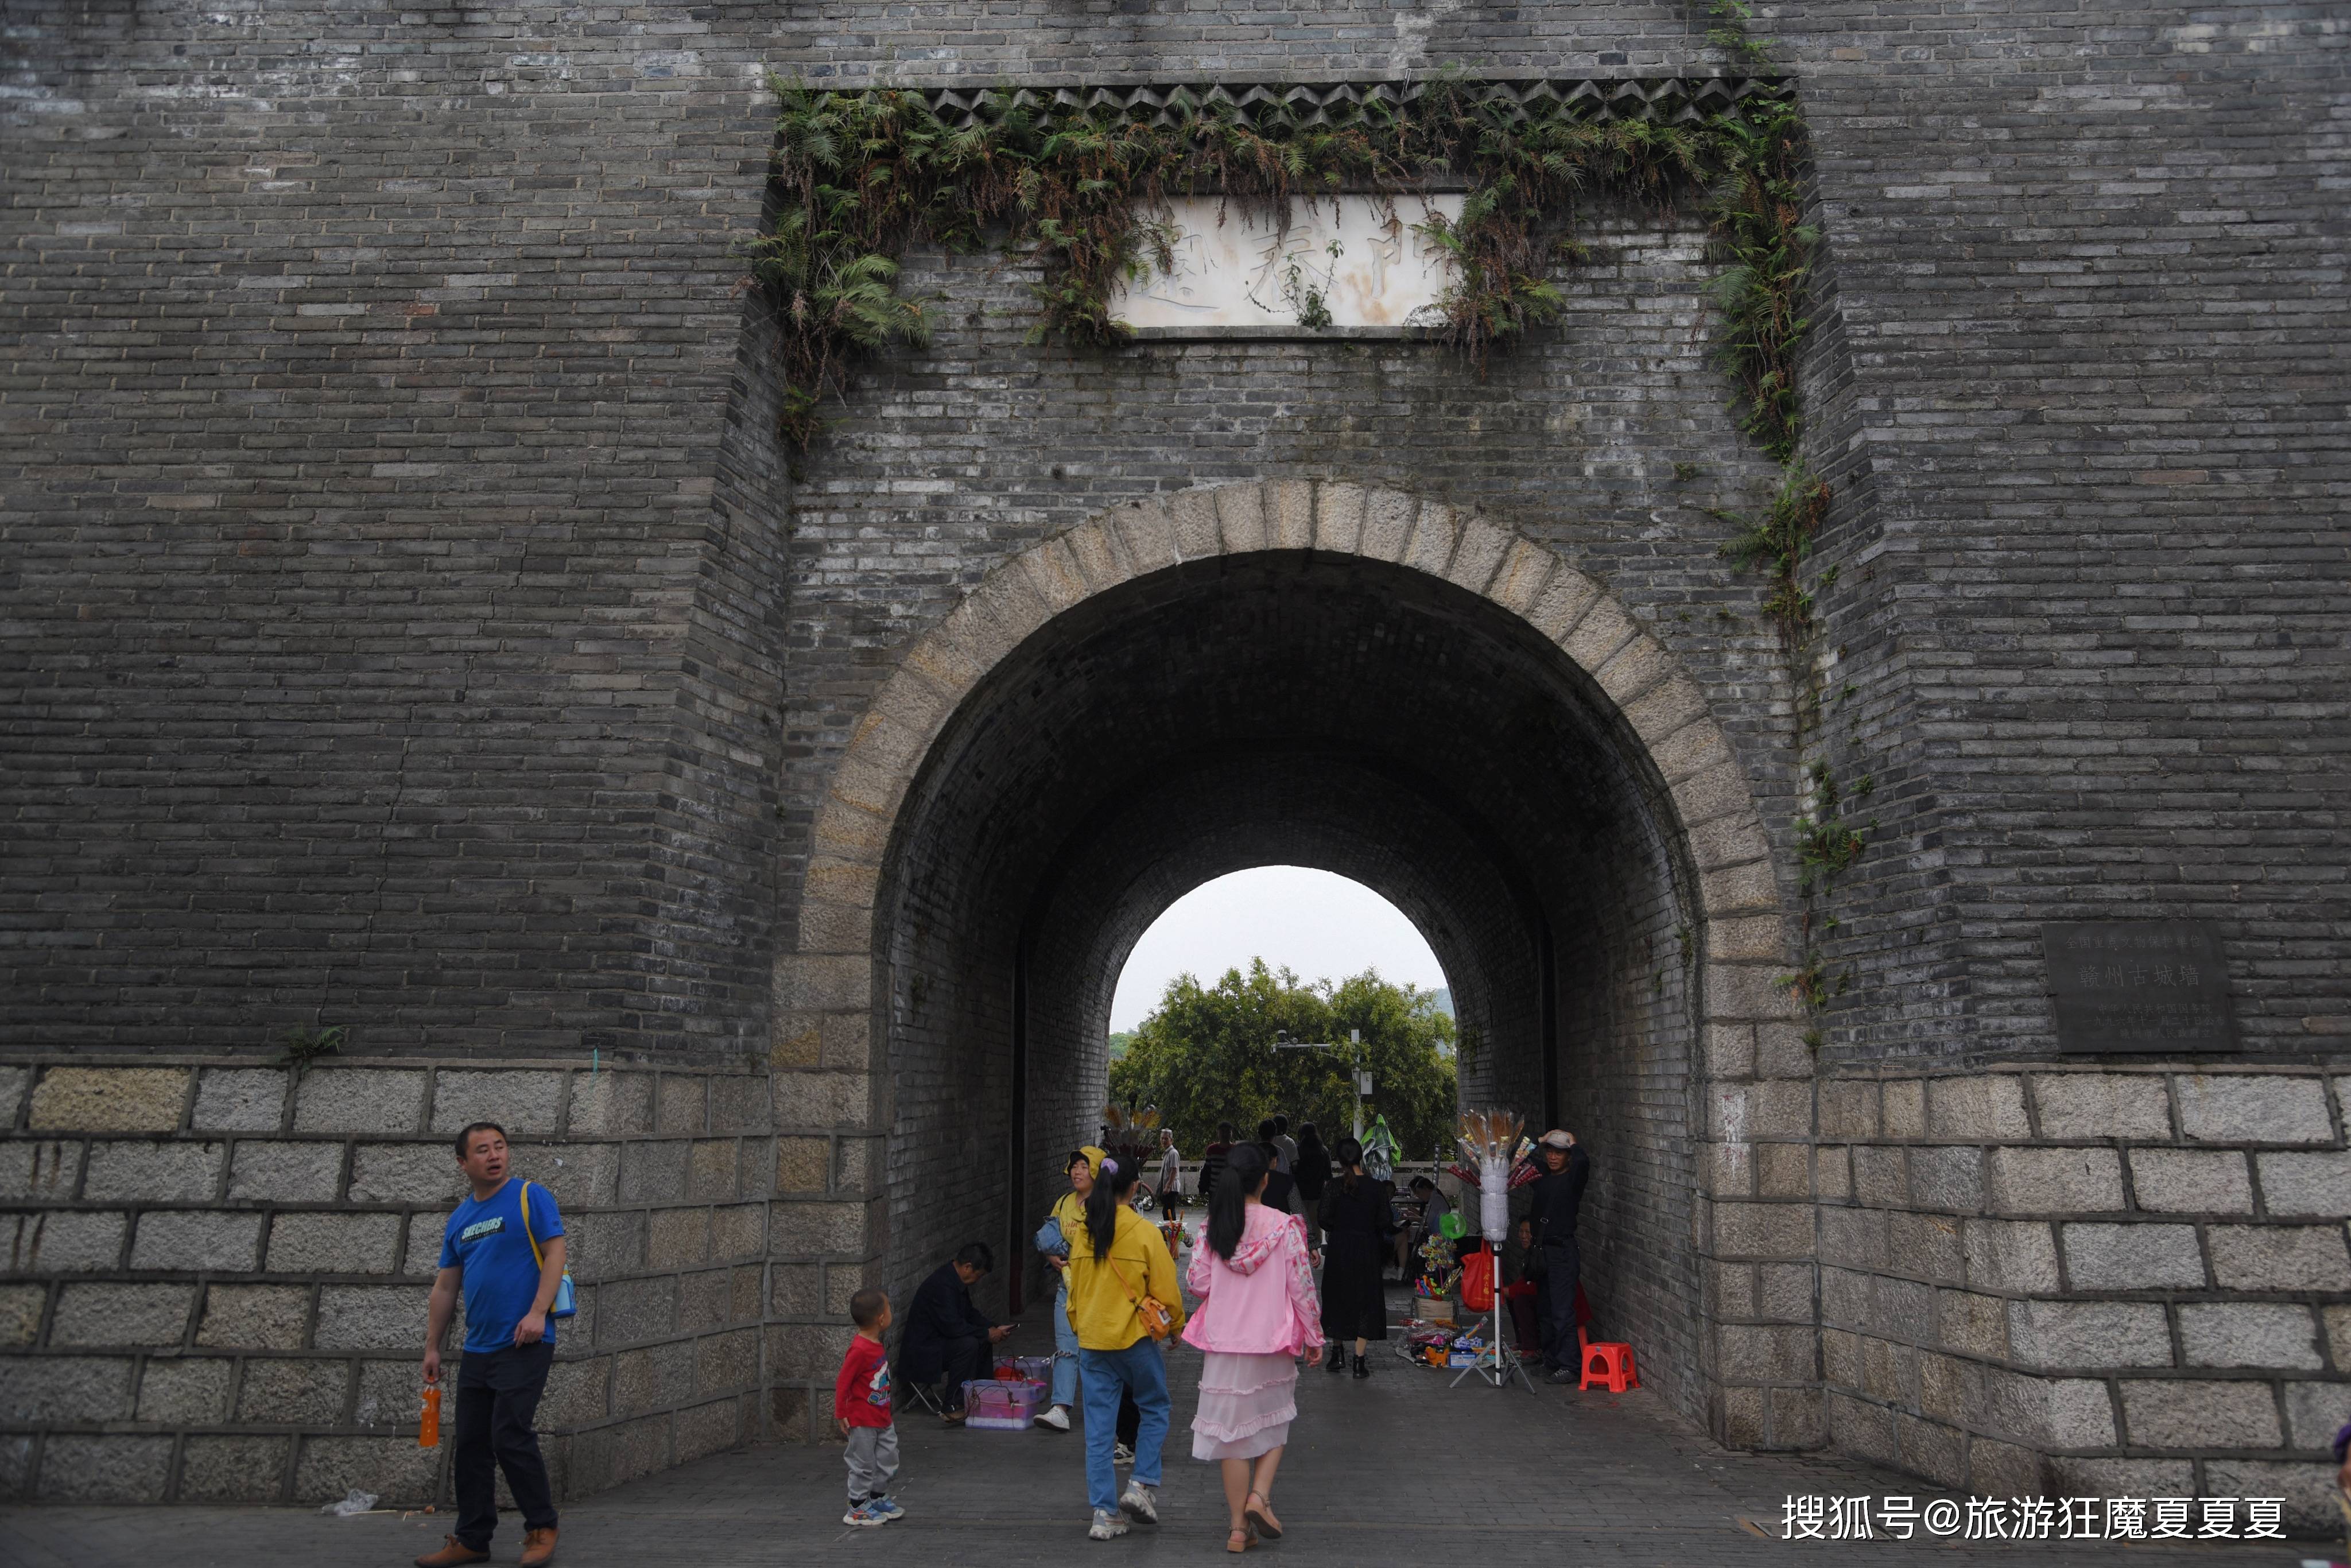 江西赣州的神奇浮桥，竟由100多艘小船组成，宋代至今已历时800年